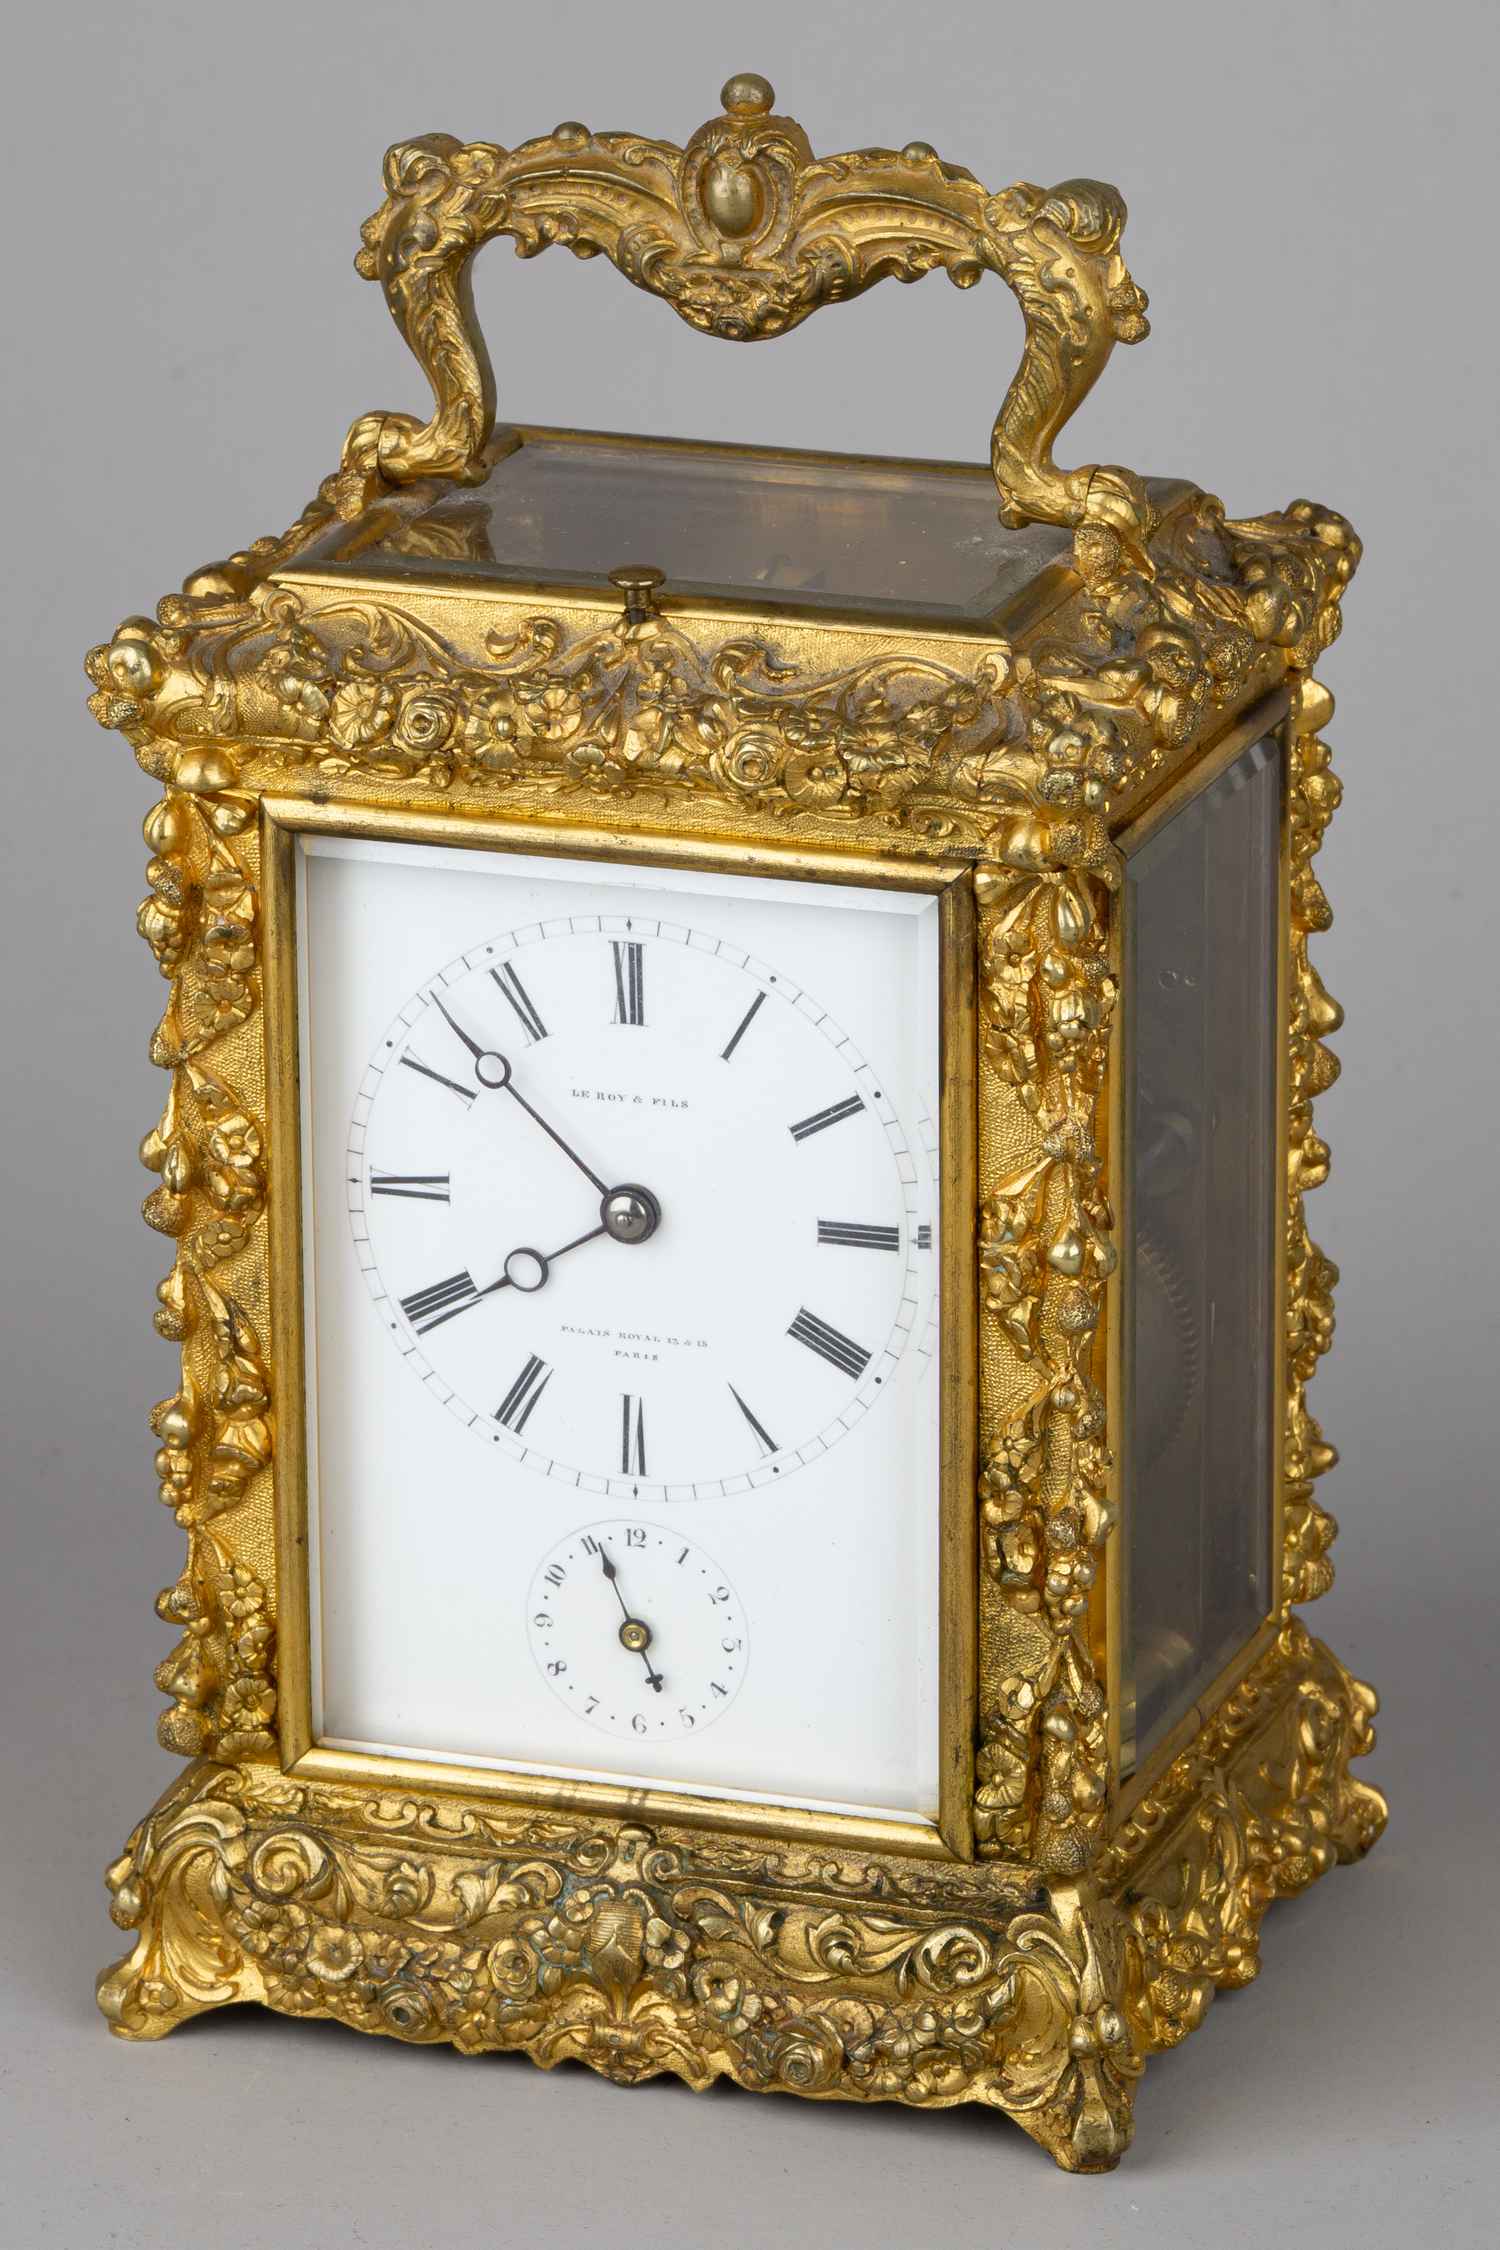 (Поставщик императорских дворов) Каретные часы в стиле Людовика XIV. Франция, фирма Le Roy et fils, вторая половина XIX века.